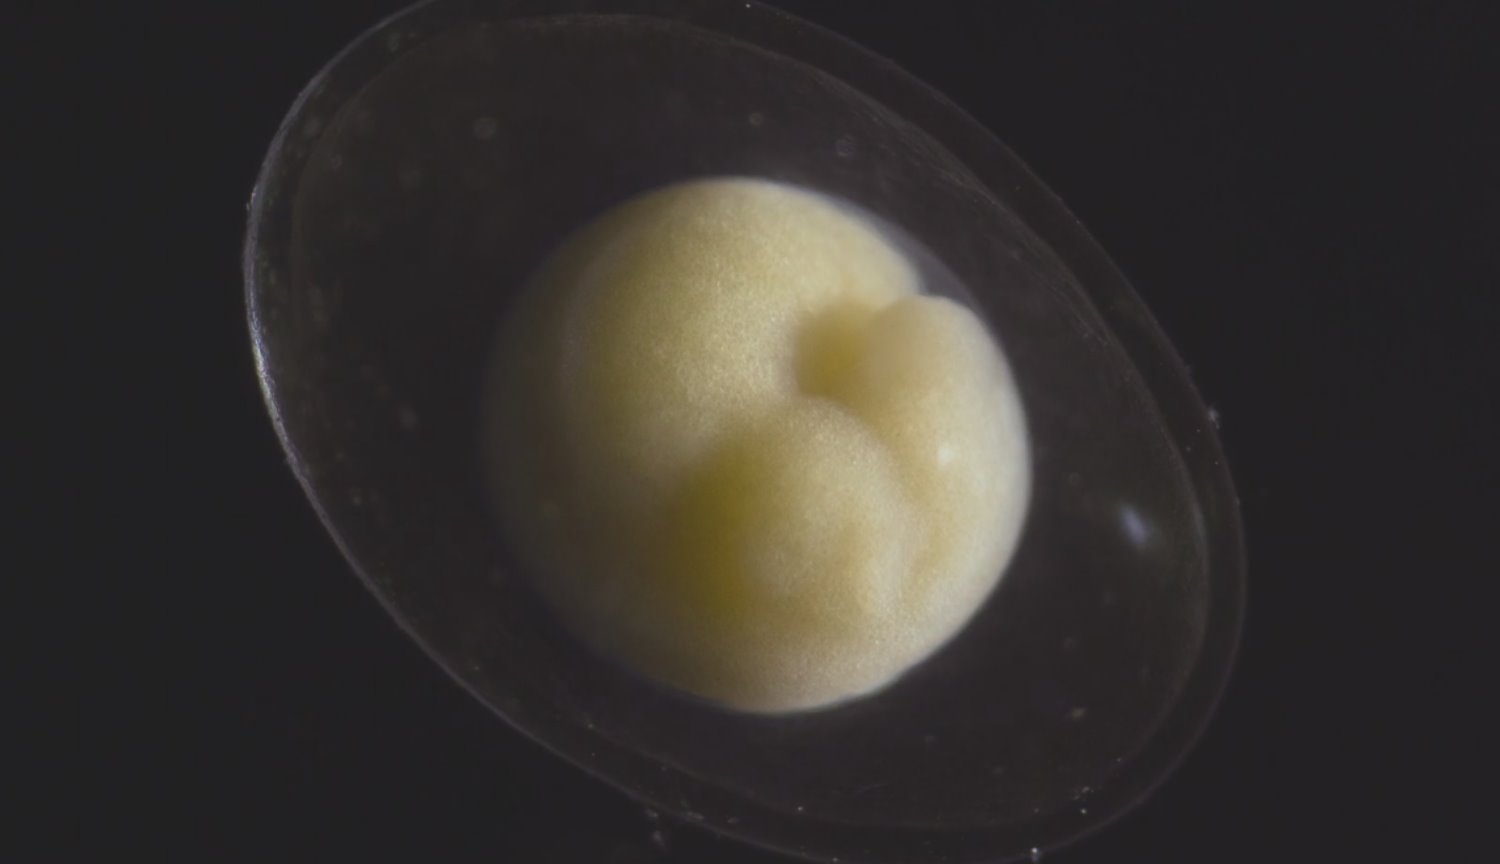 #Video | Wie einen winzigen Embryo verwandelt sich in einen schönen lebendigen Organismus?